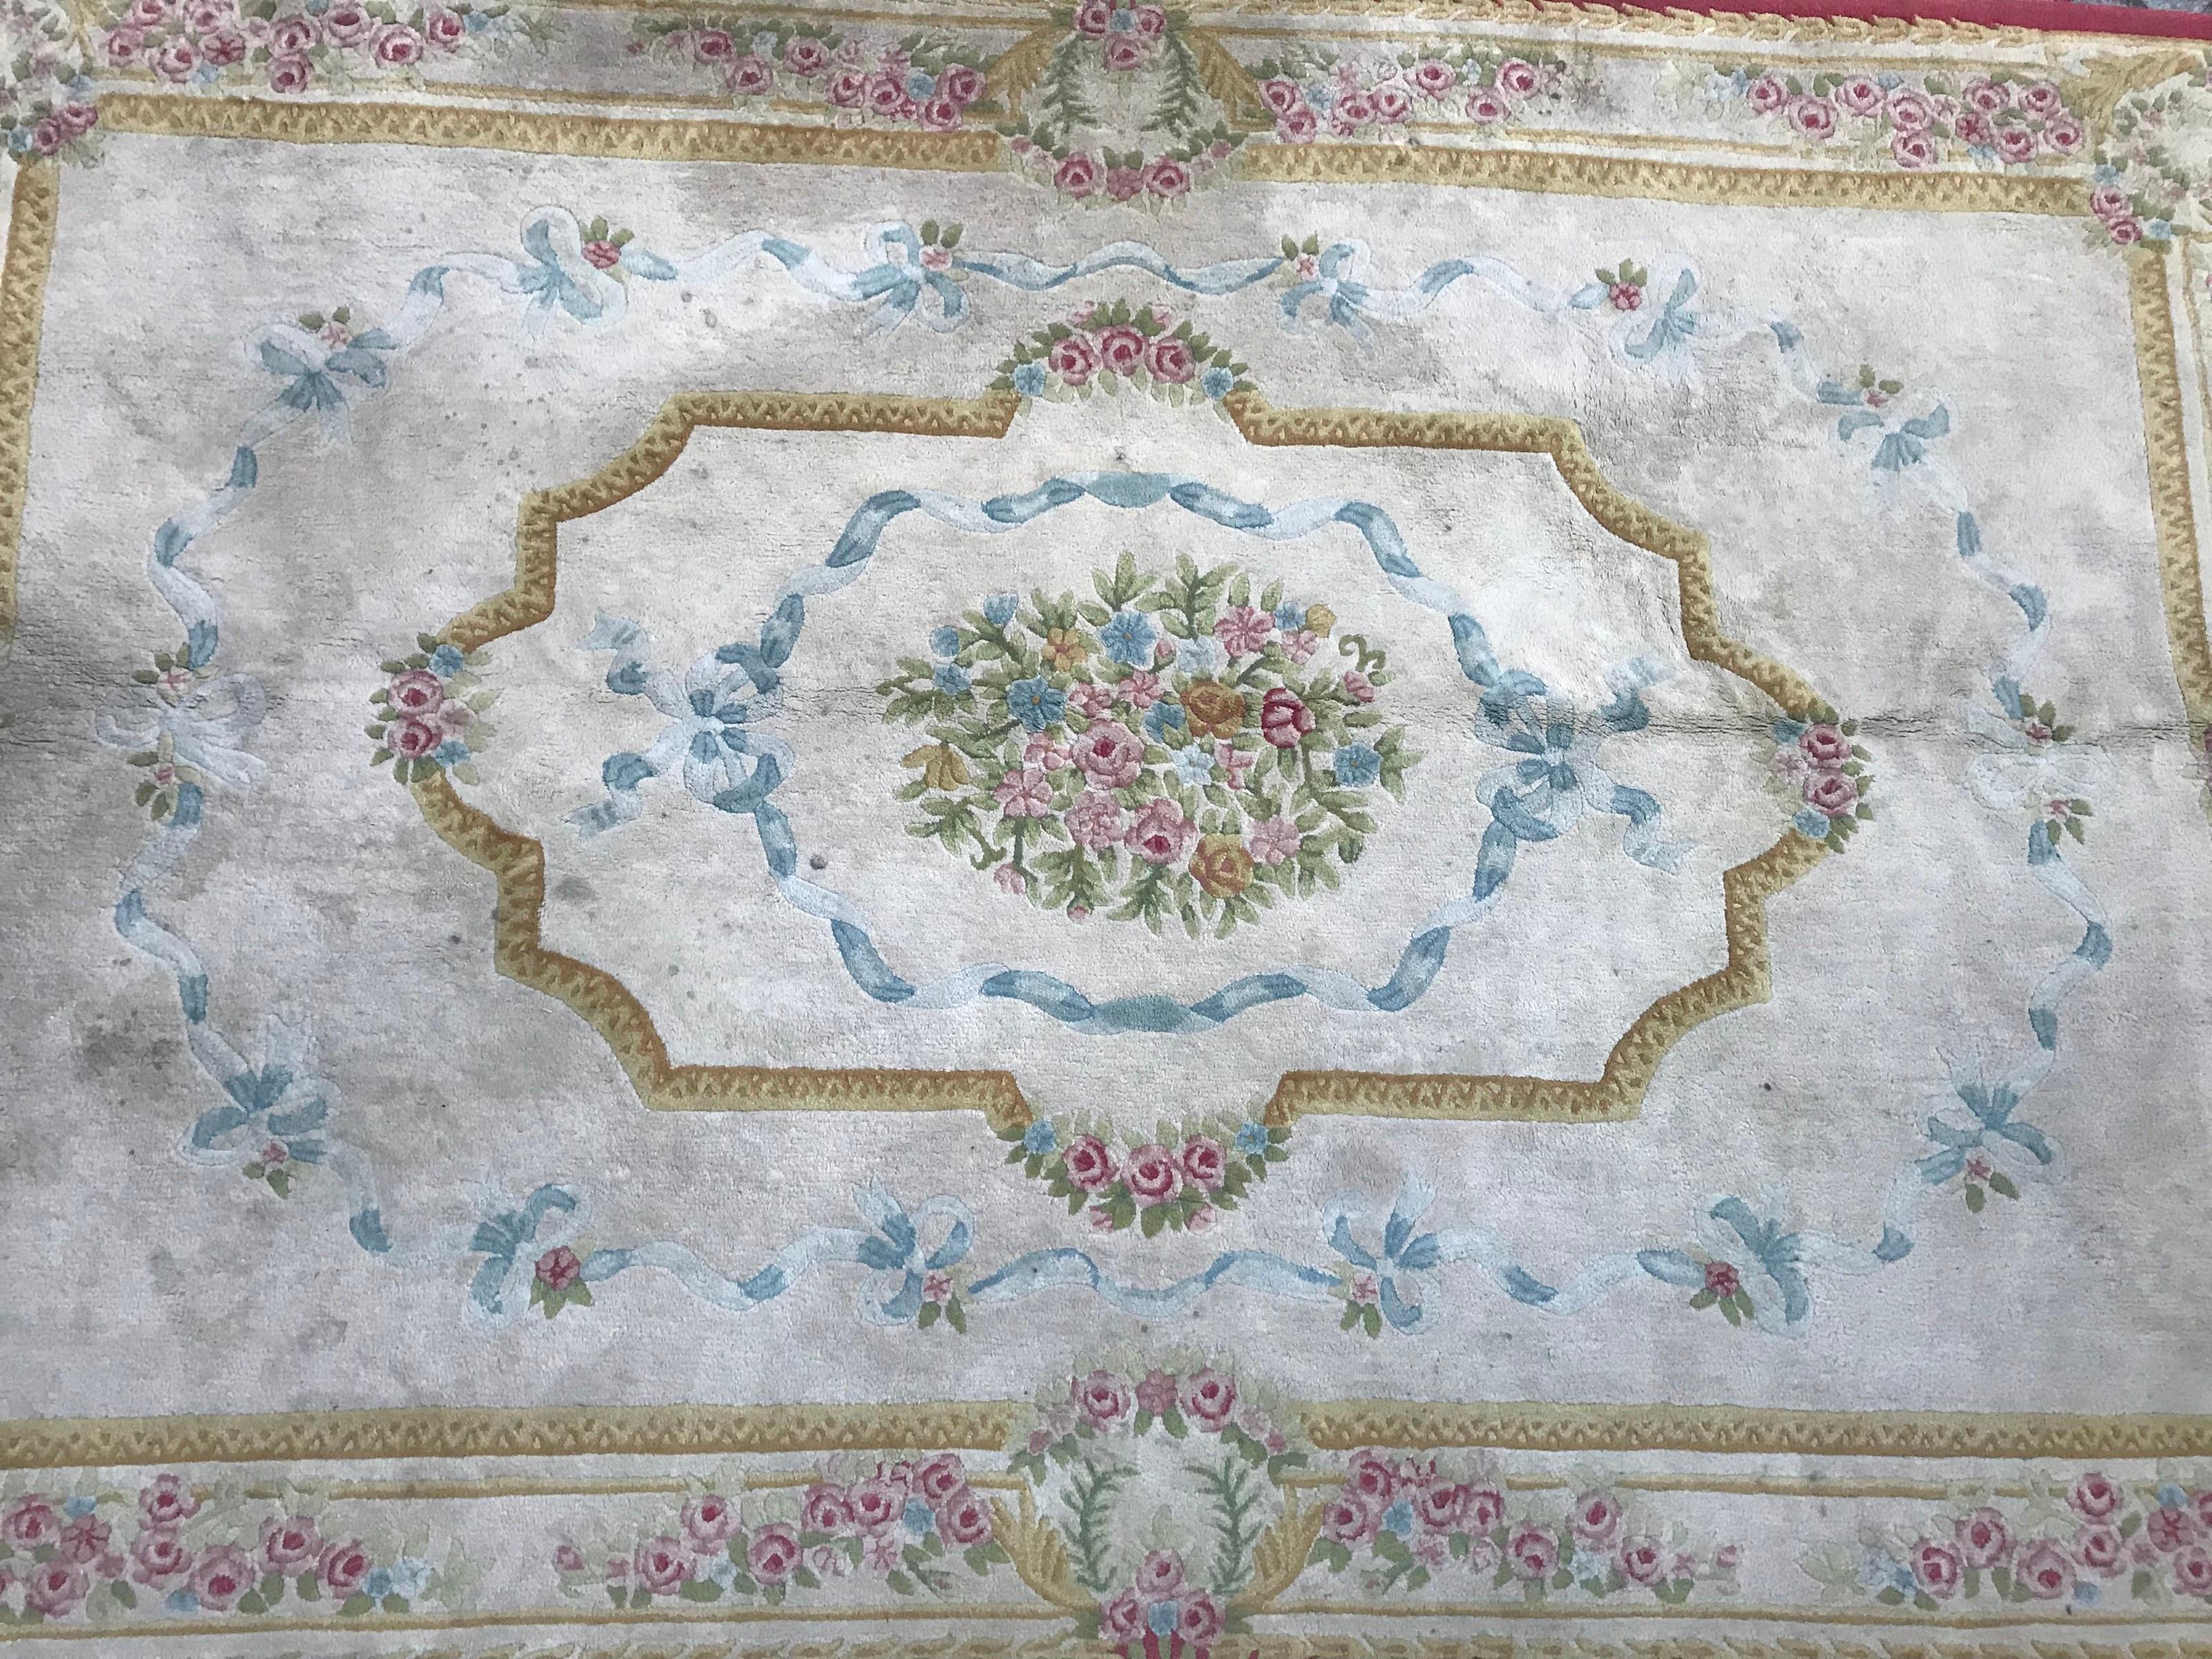 Magnifique tapis artisanal de la fin du 20e siècle avec un design de la Savonnerie ou d'Aubusson et de belles couleurs avec du bleu, du rose, du violet, du jaune et du vert, entièrement fait à la main avec la méthode tuftée avec du velours sur une